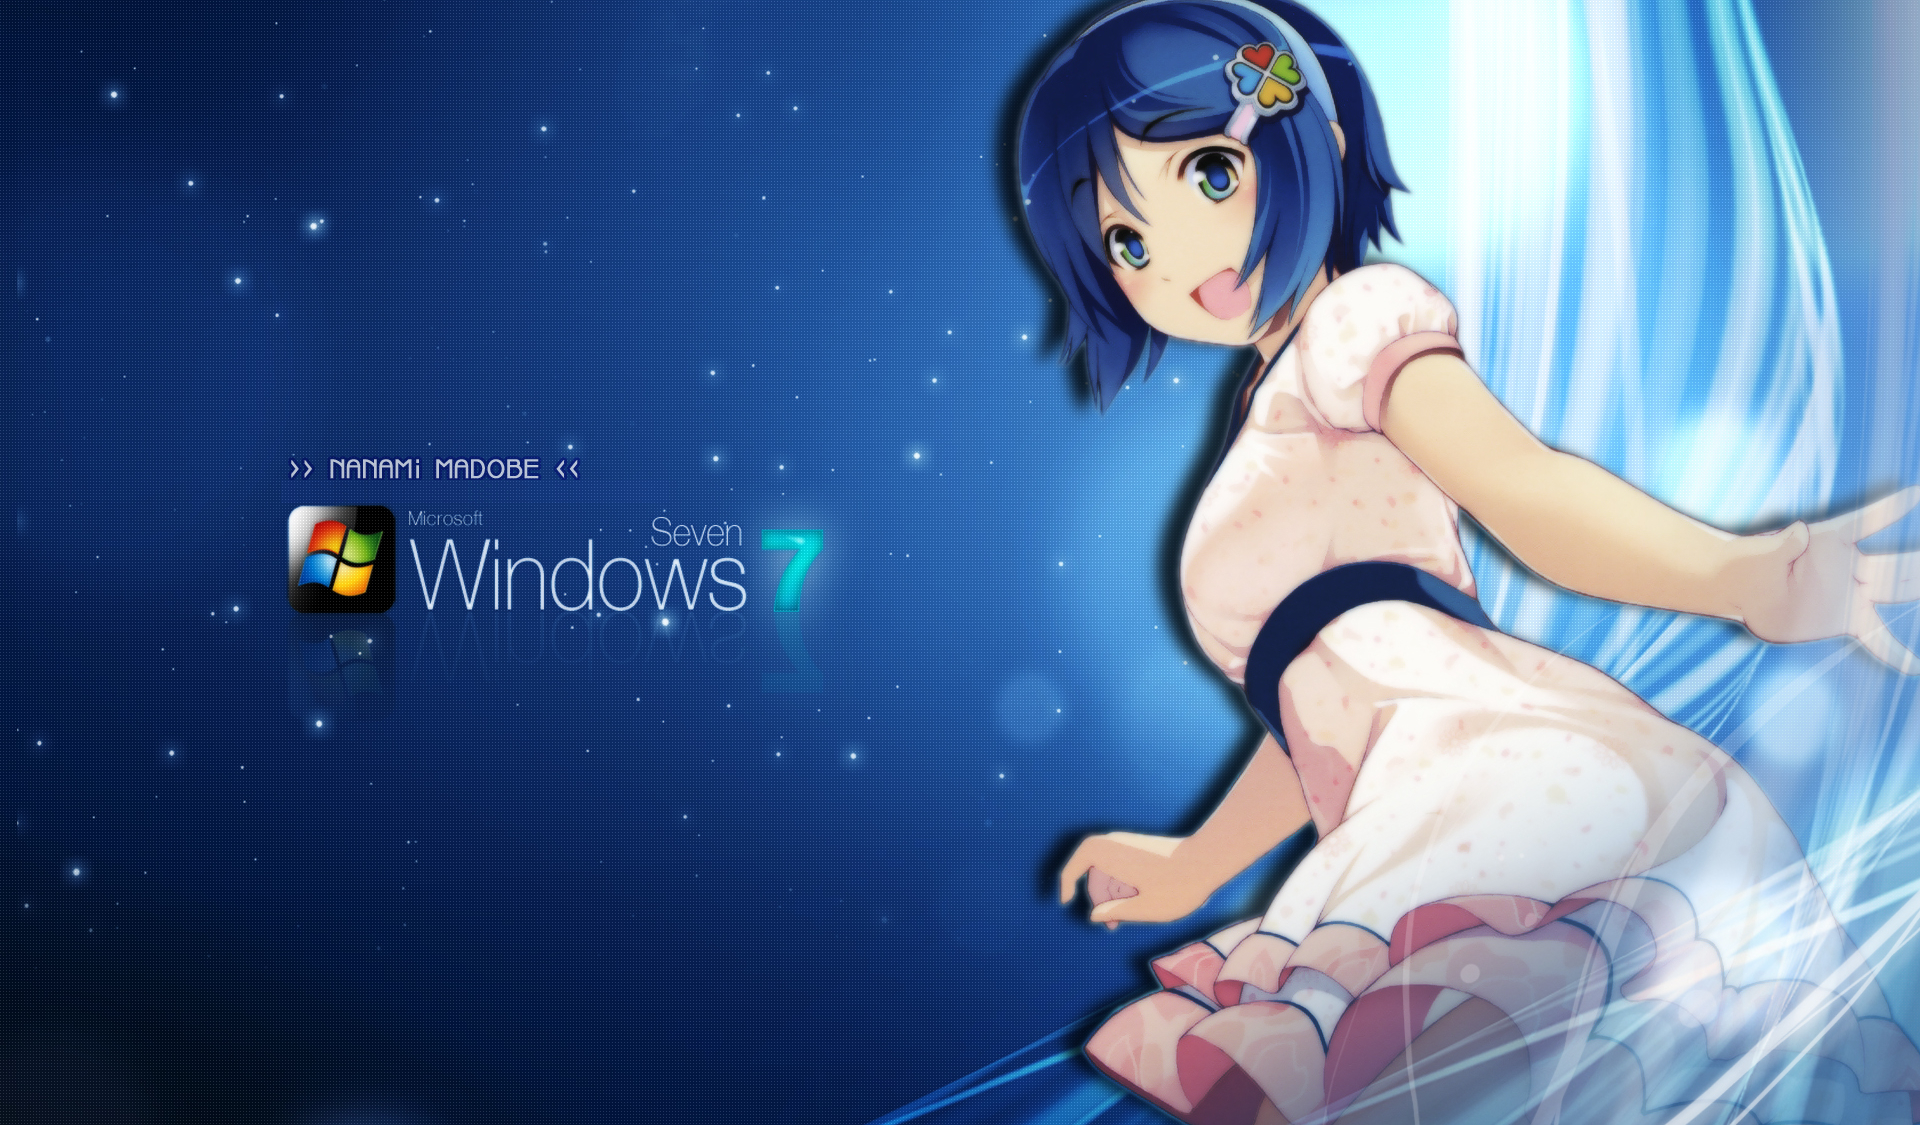 windows, 7, Madobe, Nanami, Microsoft, Windows, Os tan Wallpaper